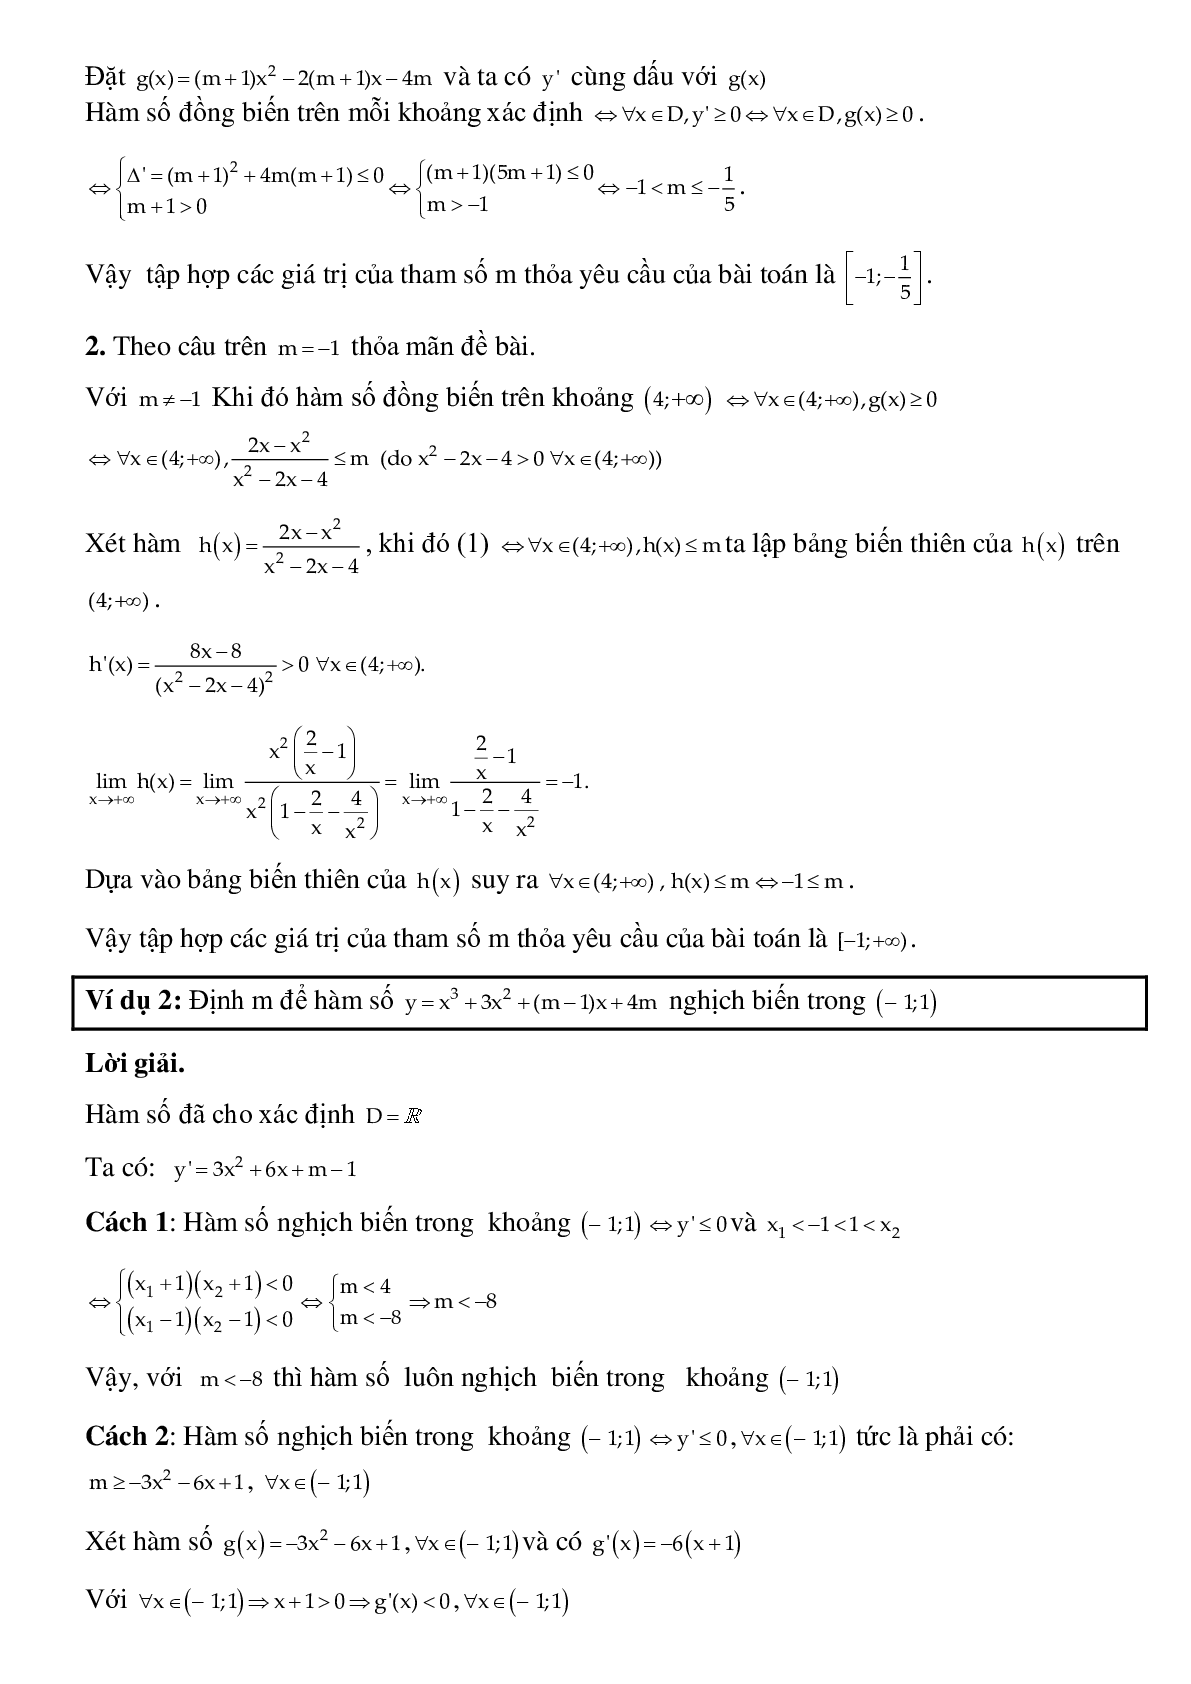 Dạng bài tập Tìm tham số m để hàm số đơn điệu trên khoảng K cho trước (trang 2)